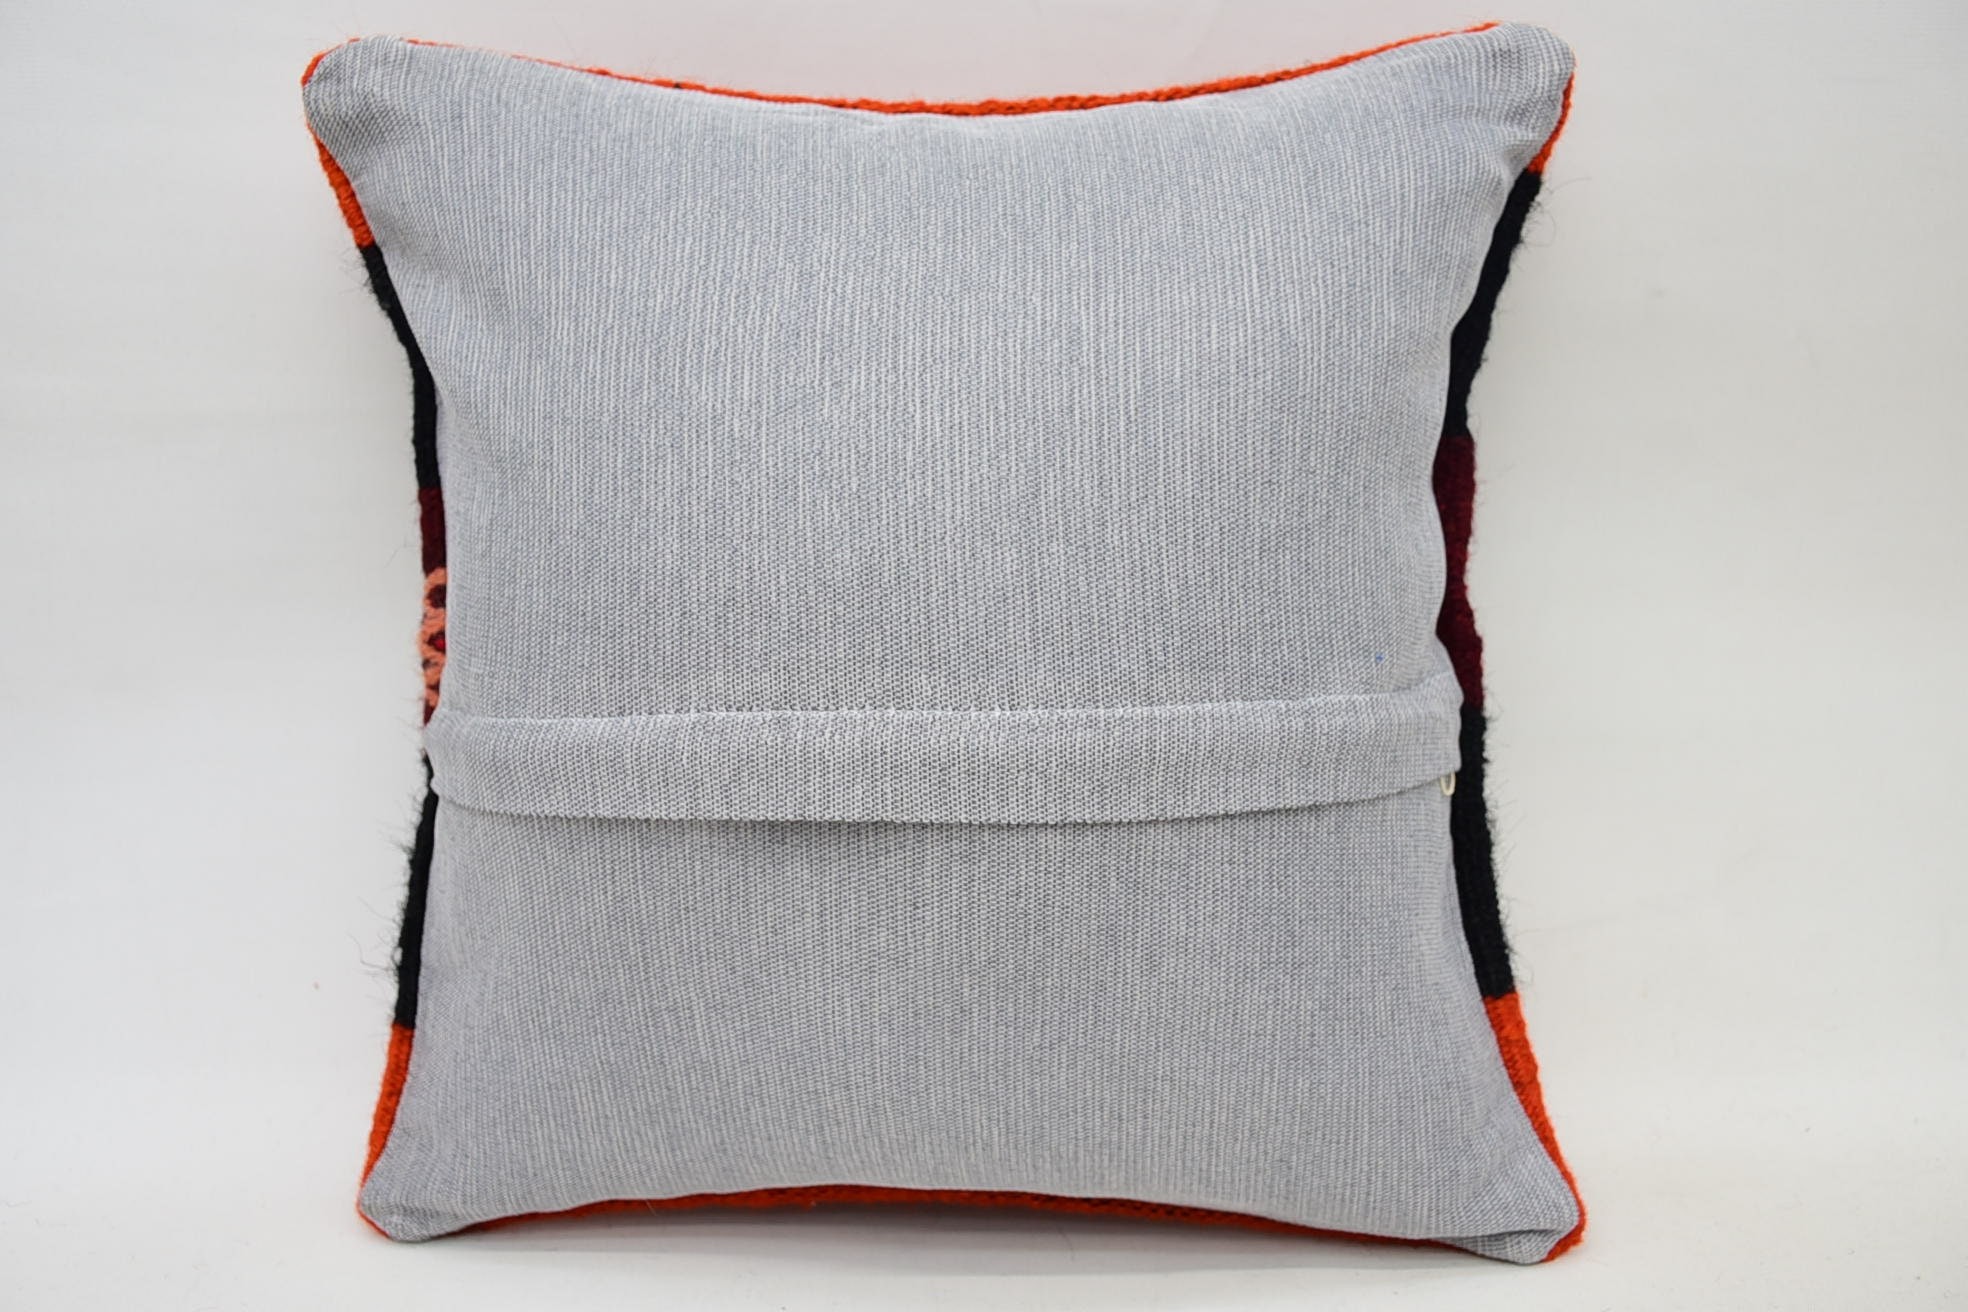 Kilim Pillow, Retro Throw Pillow, Custom Pillow Case, Pillow for Sofa, 14"x14" Orange Pillow Cover, Vintage Kilim Pillow